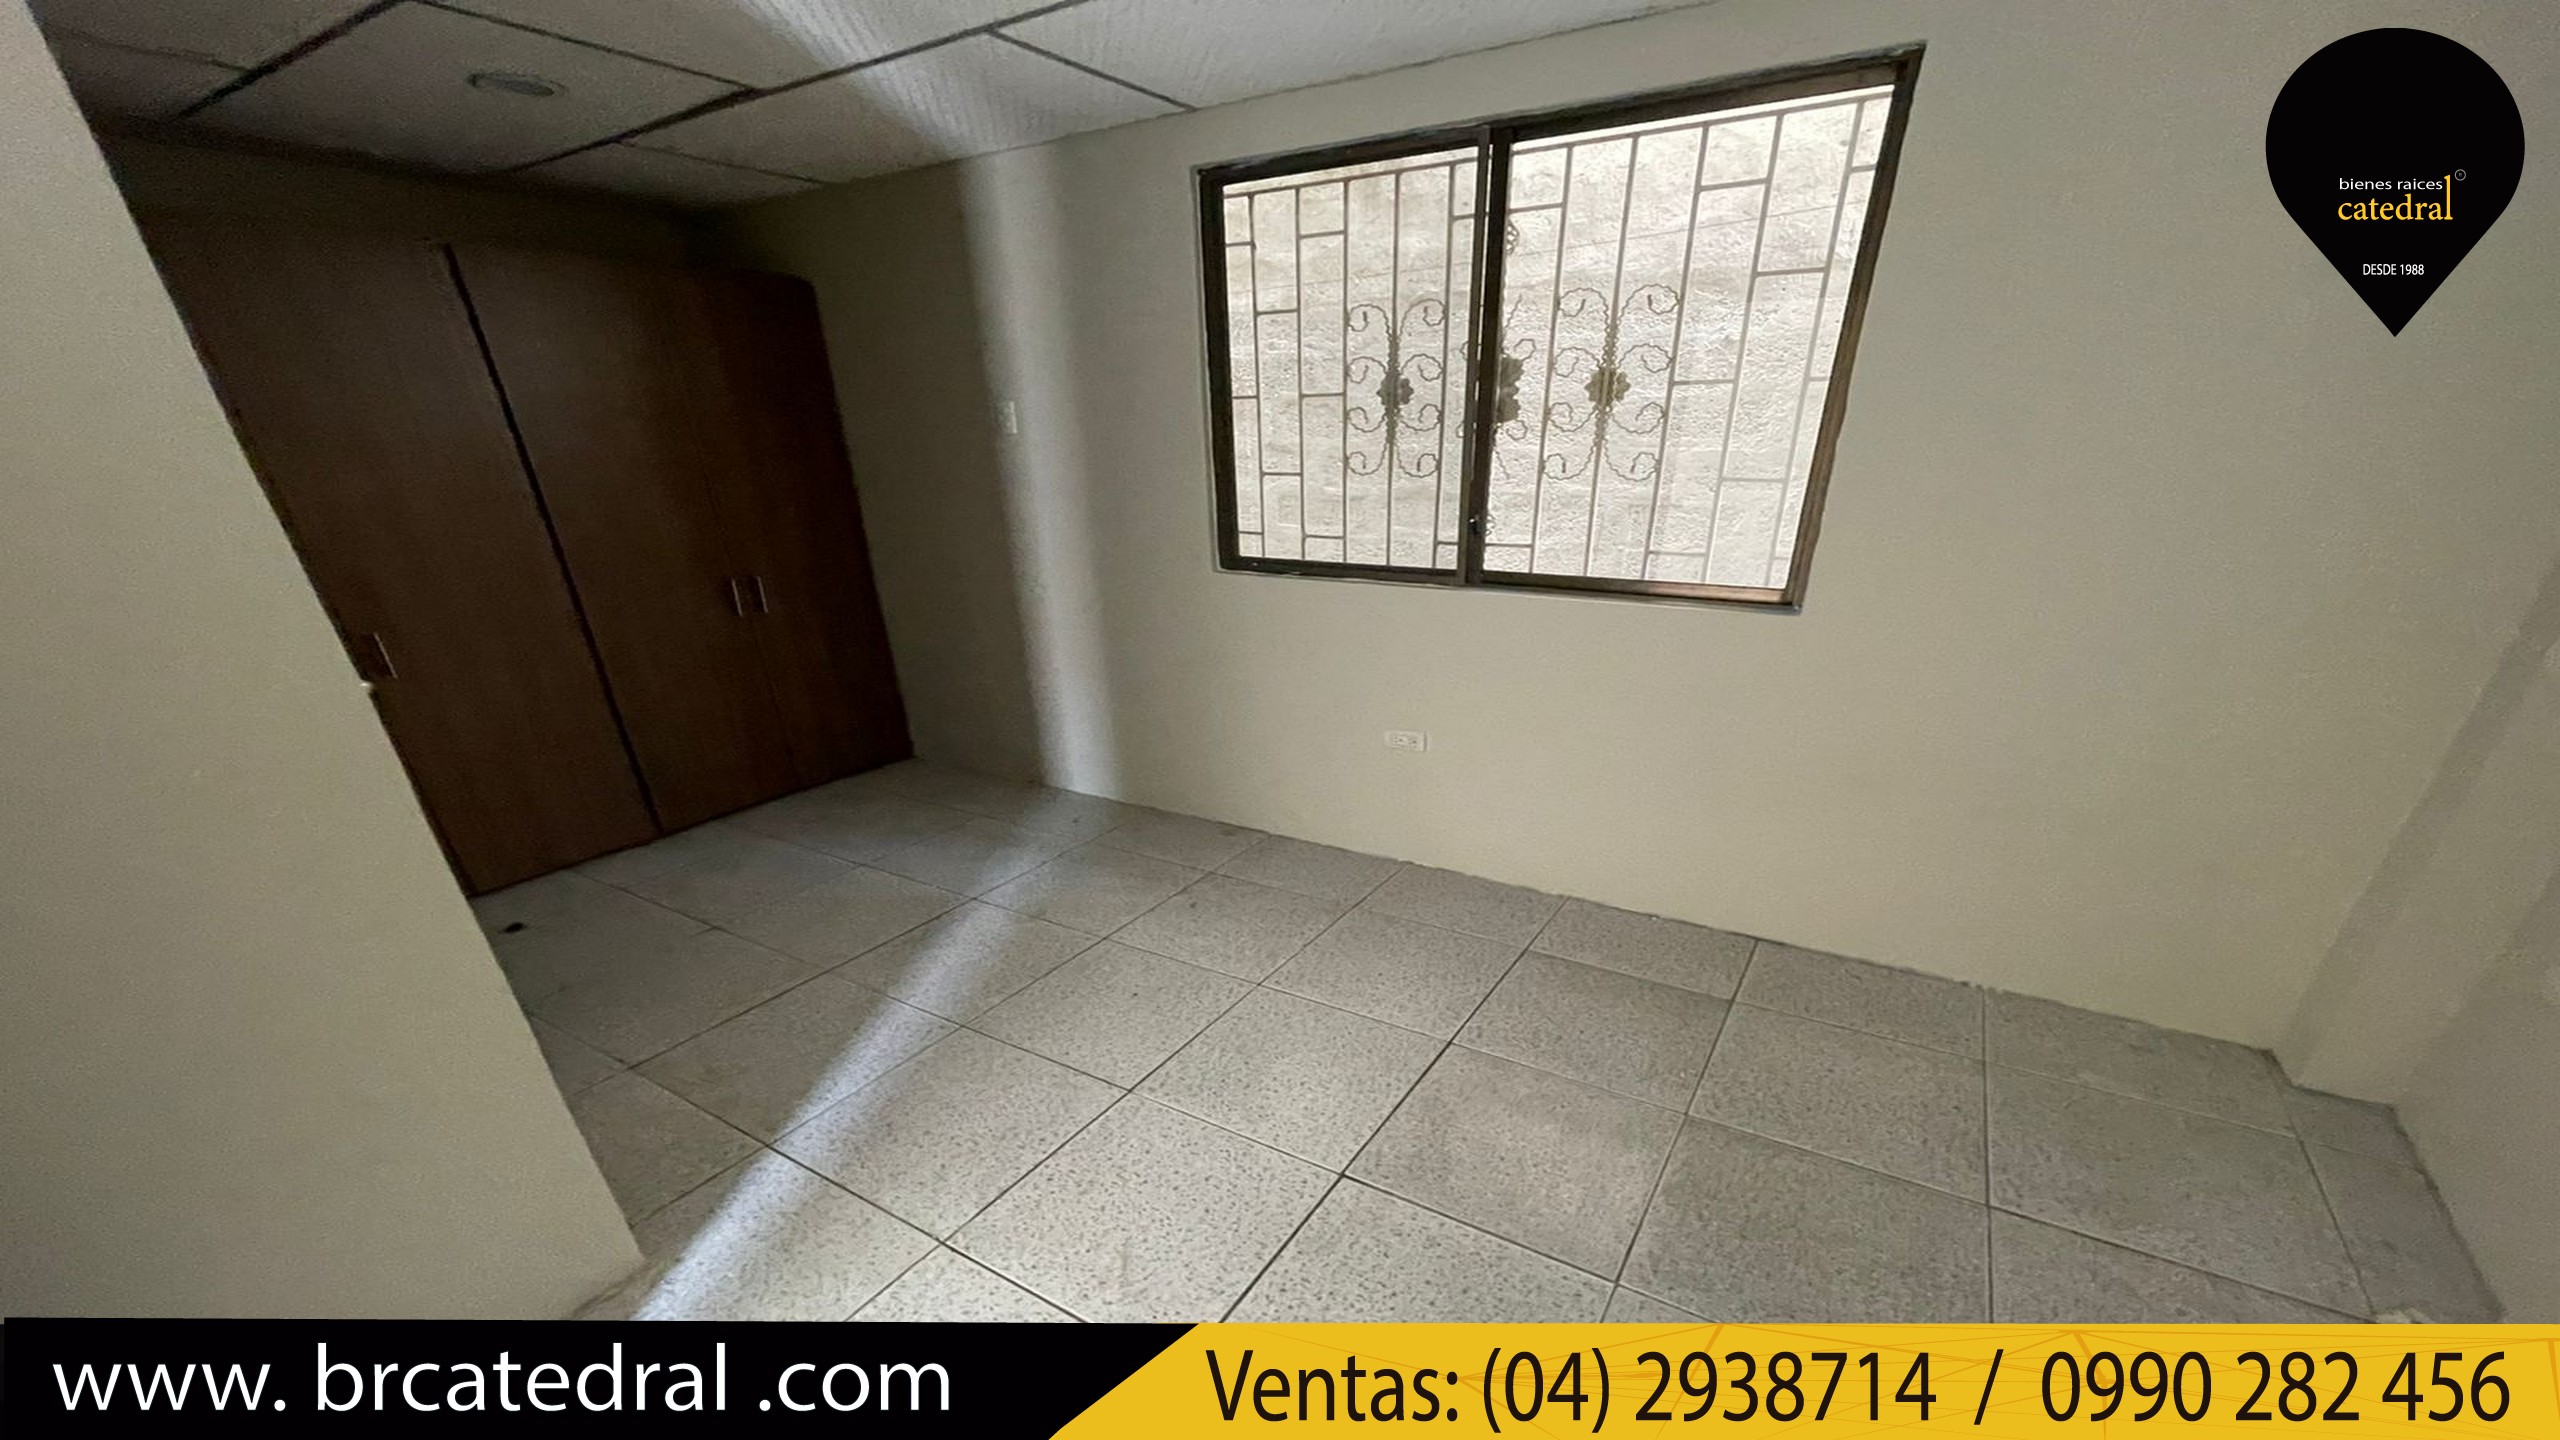 Villa Casa de Venta en Guayaquil Ecuador sector La Joya - Zafiro